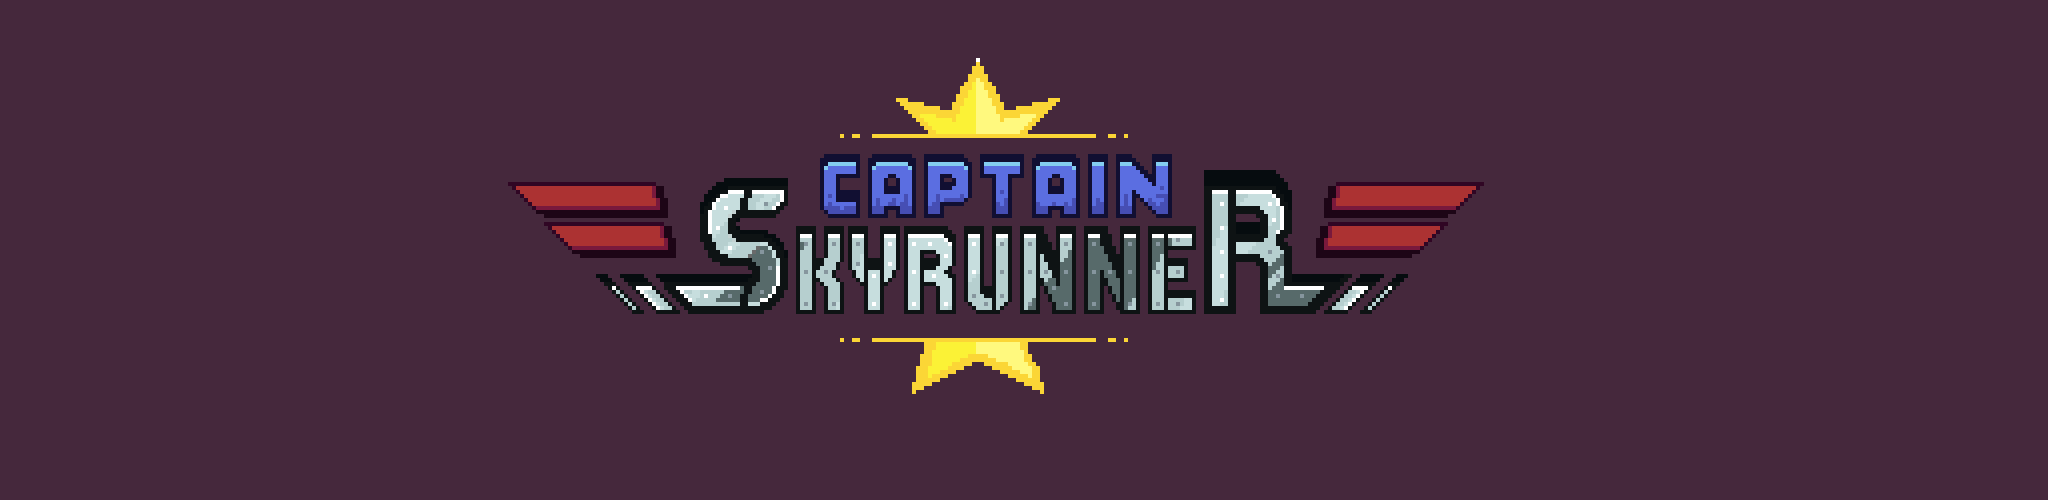 Captain Skyrunner